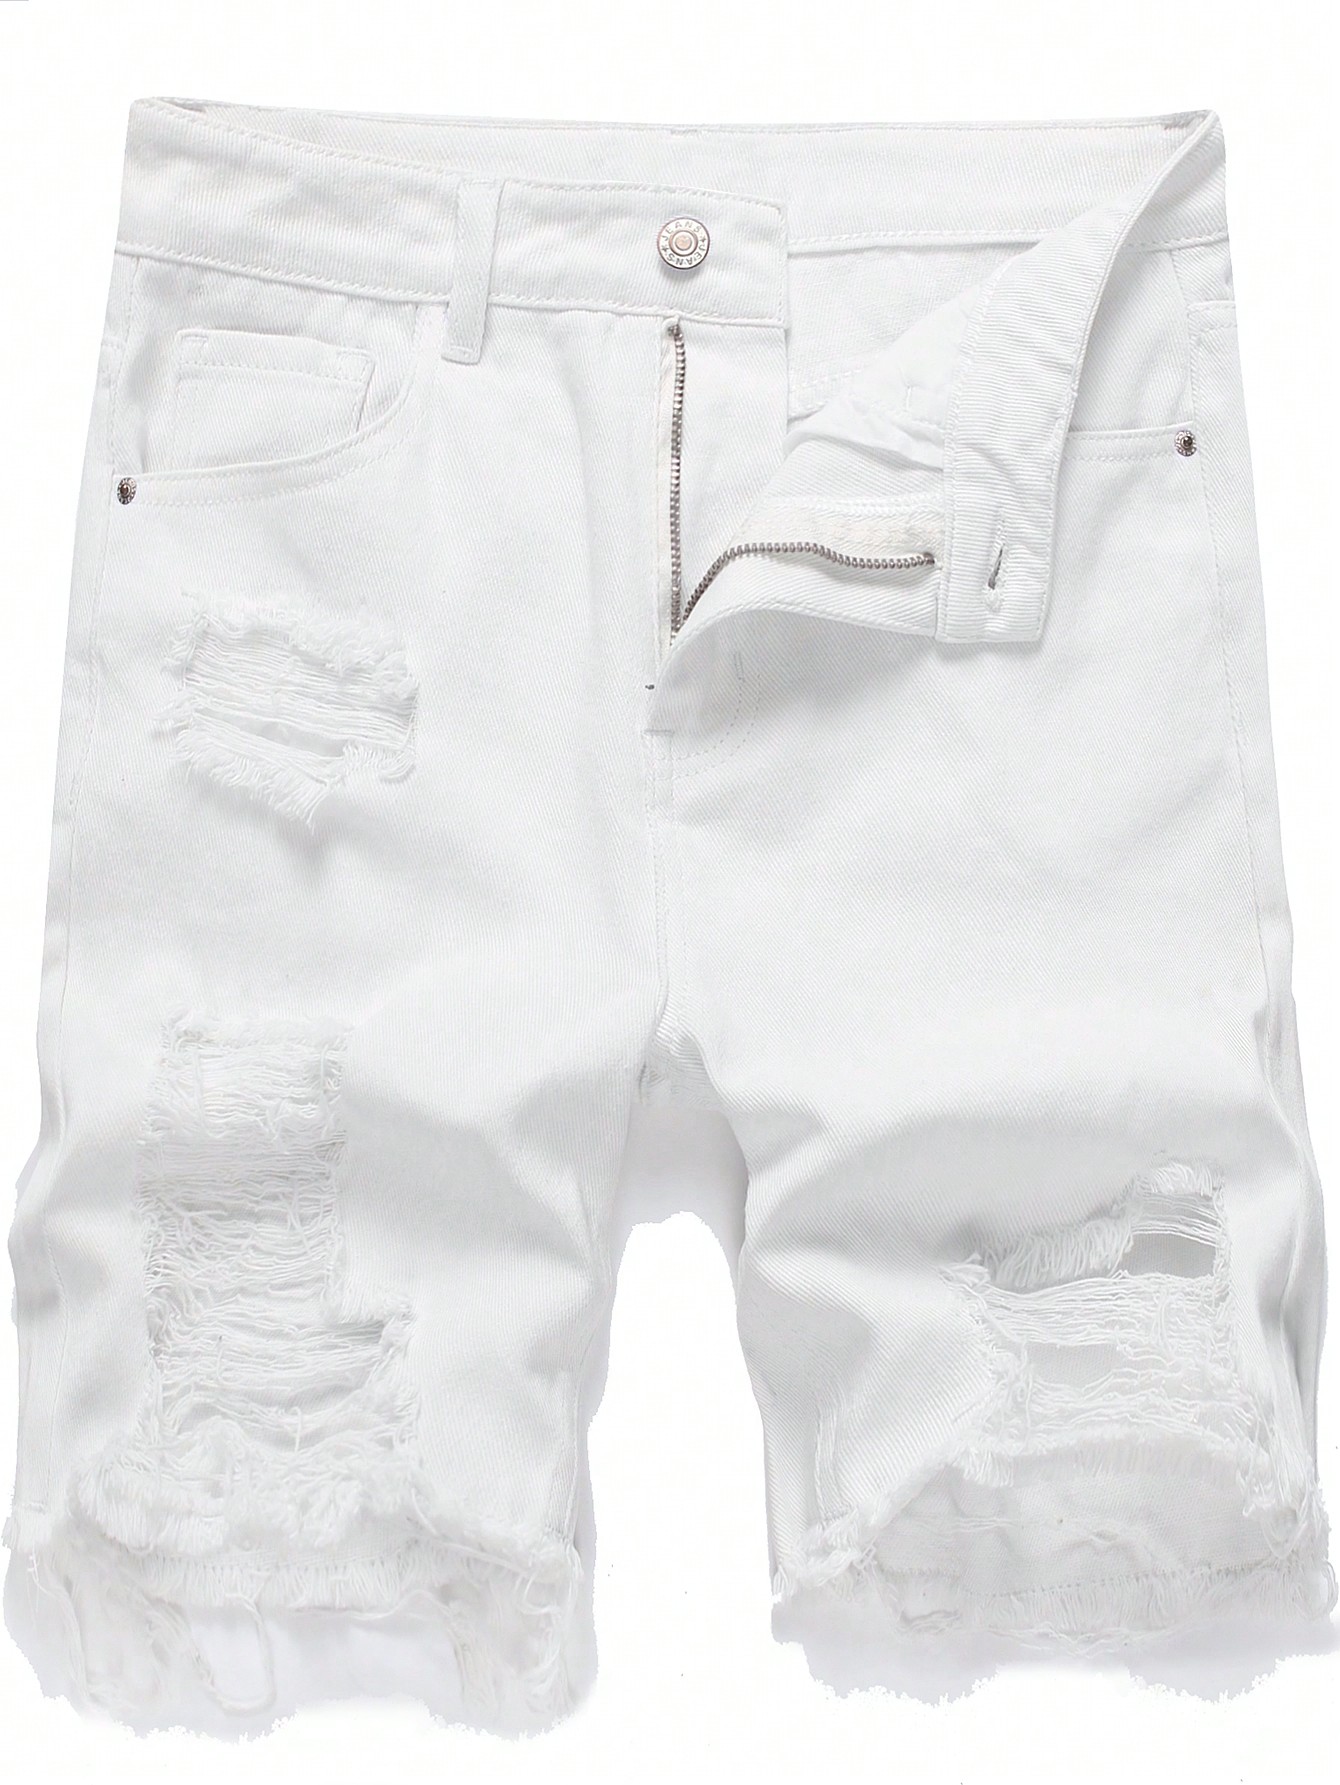 Мужские джинсовые шорты с потертостями и дырками, белый